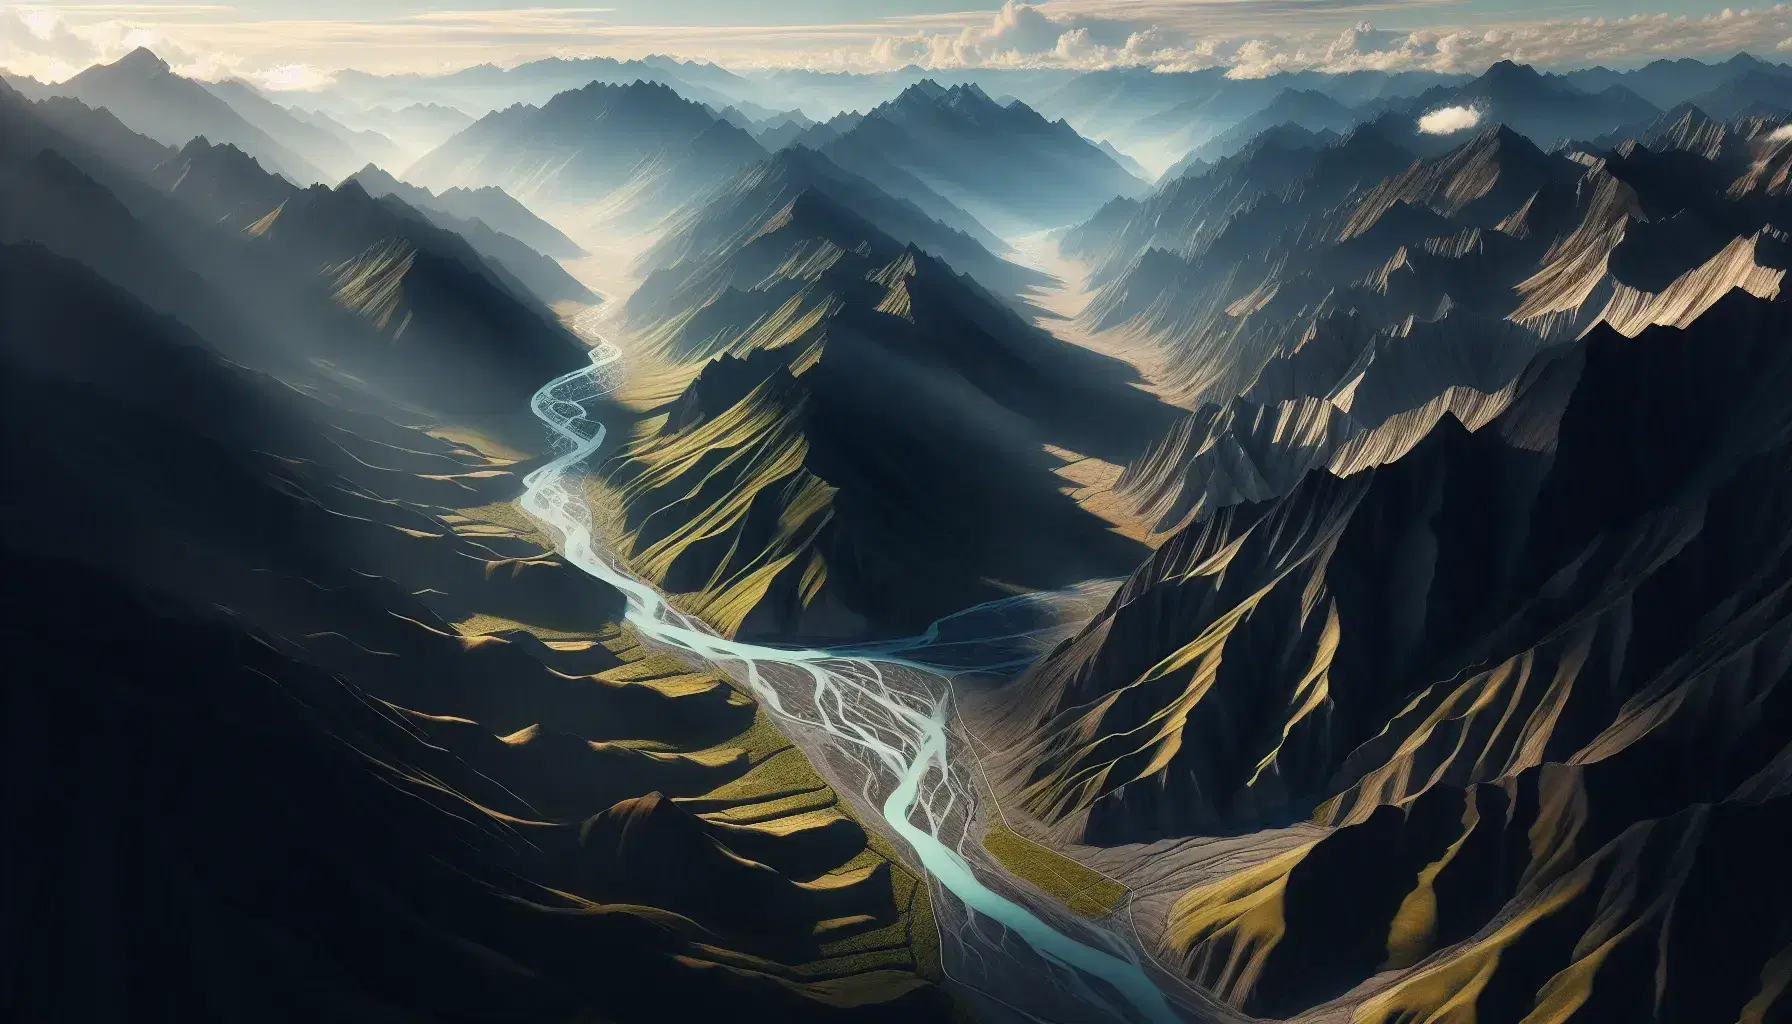 Vista aérea de una cadena montañosa con picos irregulares y vegetación verde oscuro, un río serpenteante y valles con vegetación más clara al amanecer o atardecer.